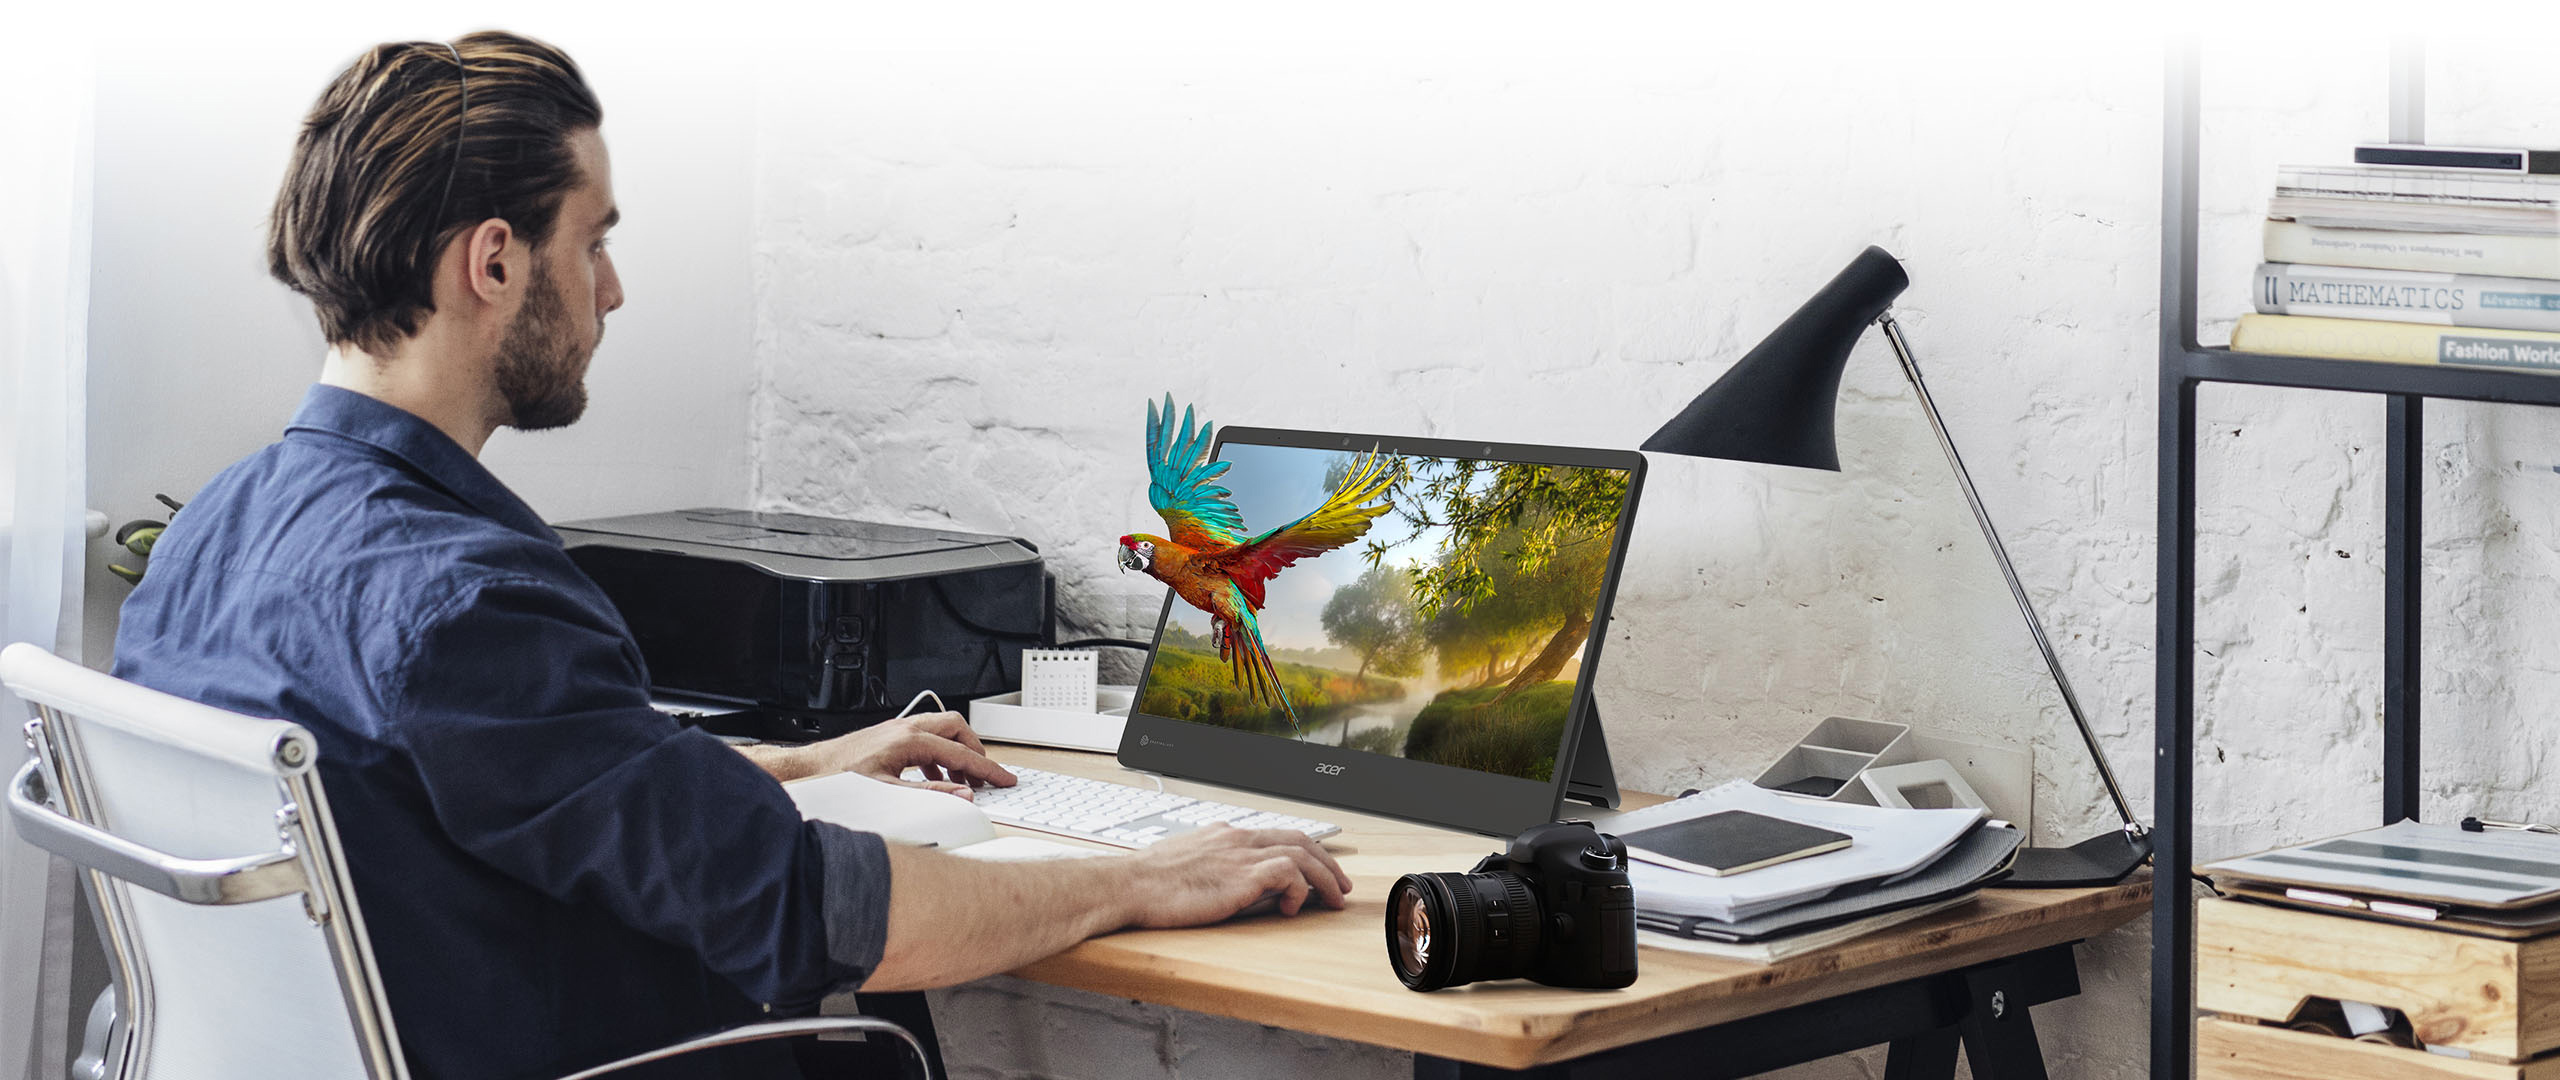 Acer dévoile de nouveaux écrans 3D stéréoscopiques sans lunettes SpatialLabs View